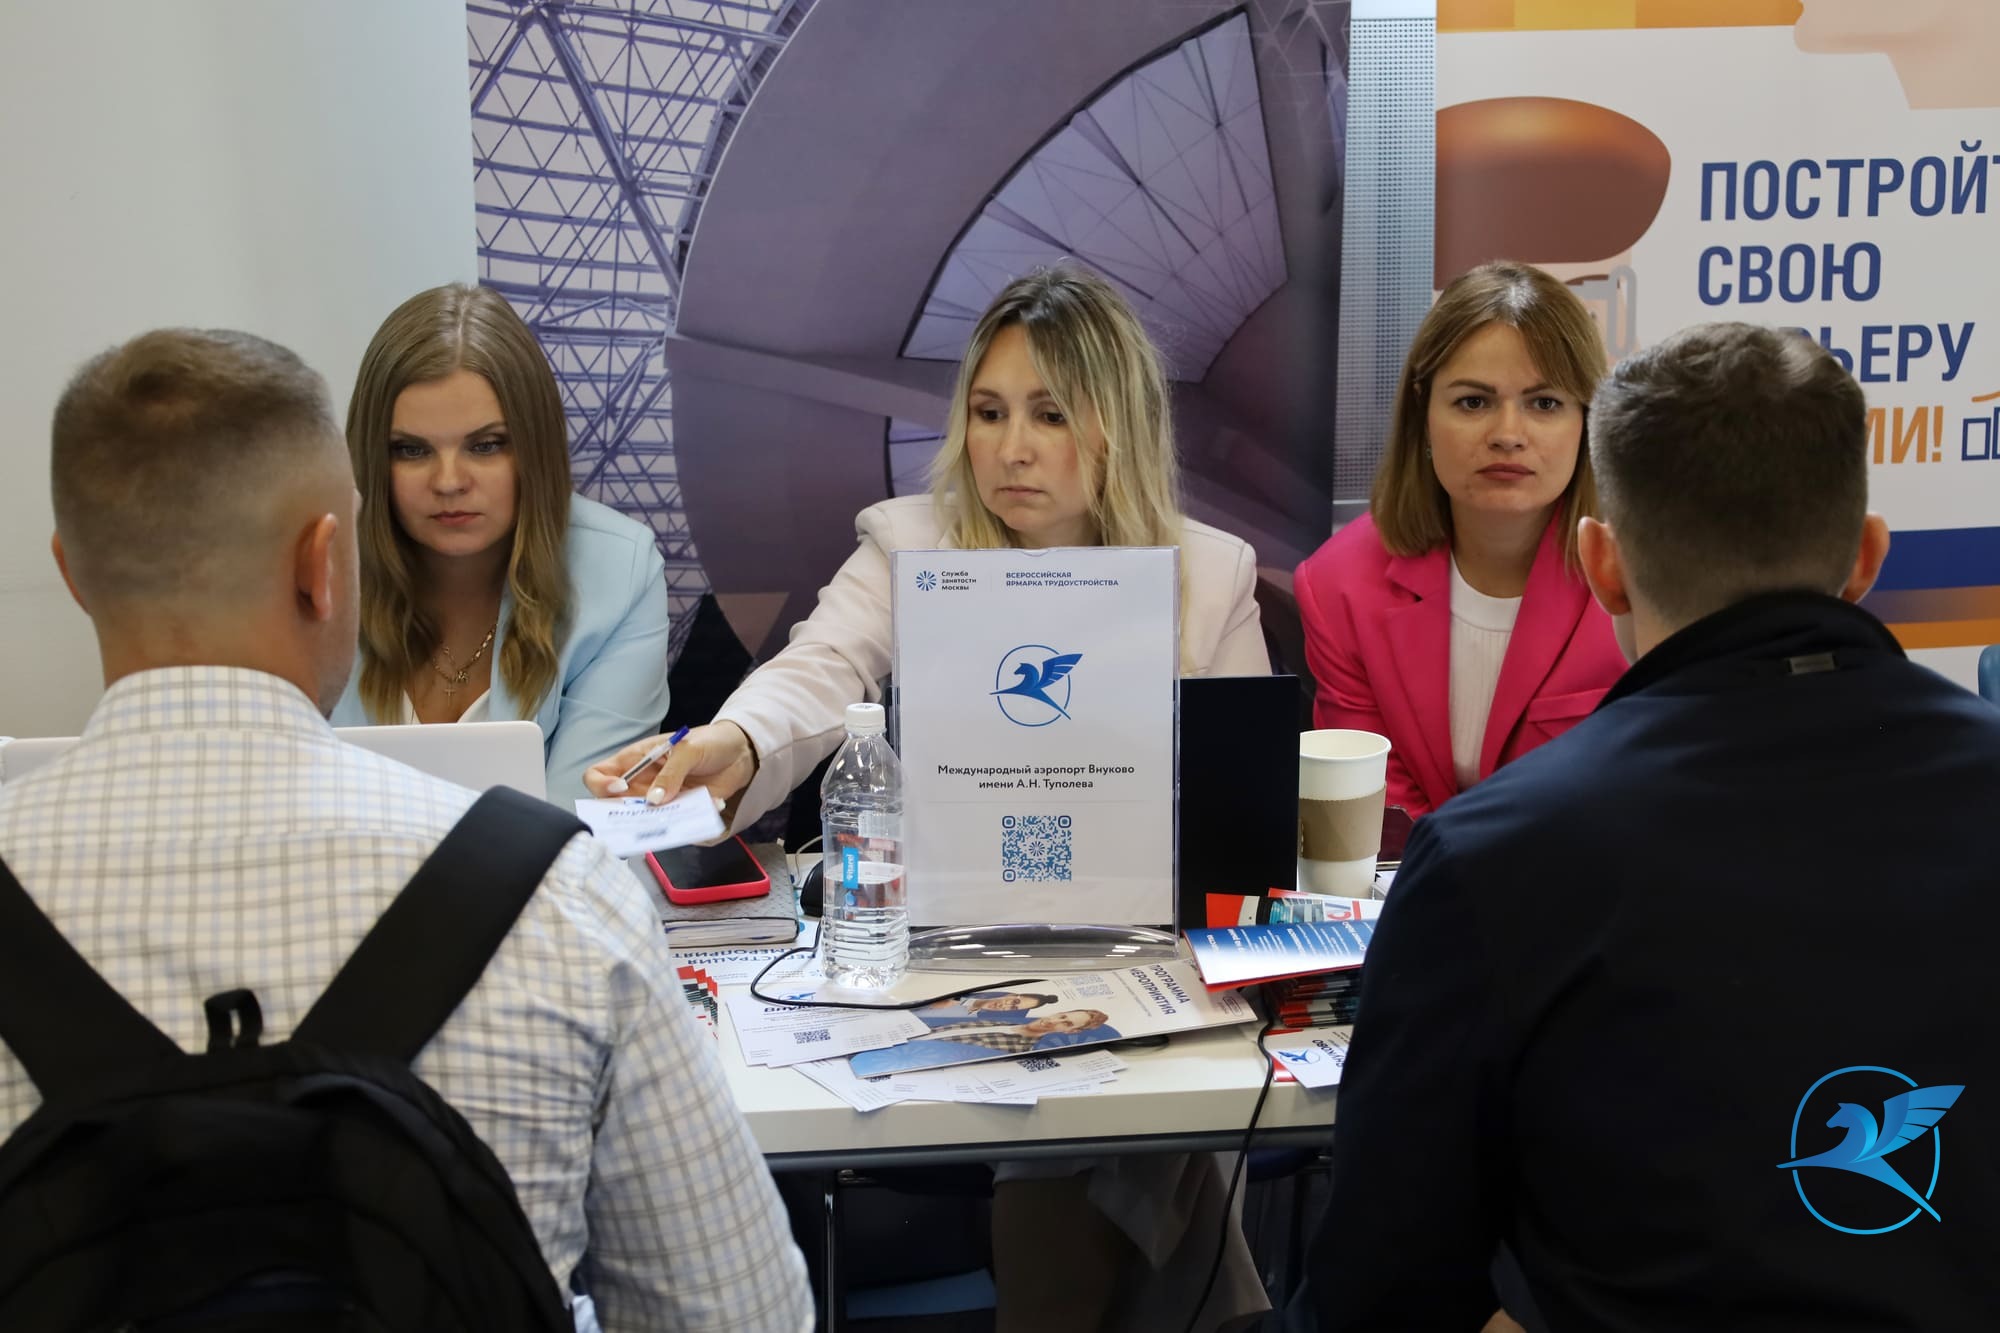 Представители аэропорта Внуково приняли участие во Всероссийской ярмарке трудоустройства | Международный аэропорт Внуково